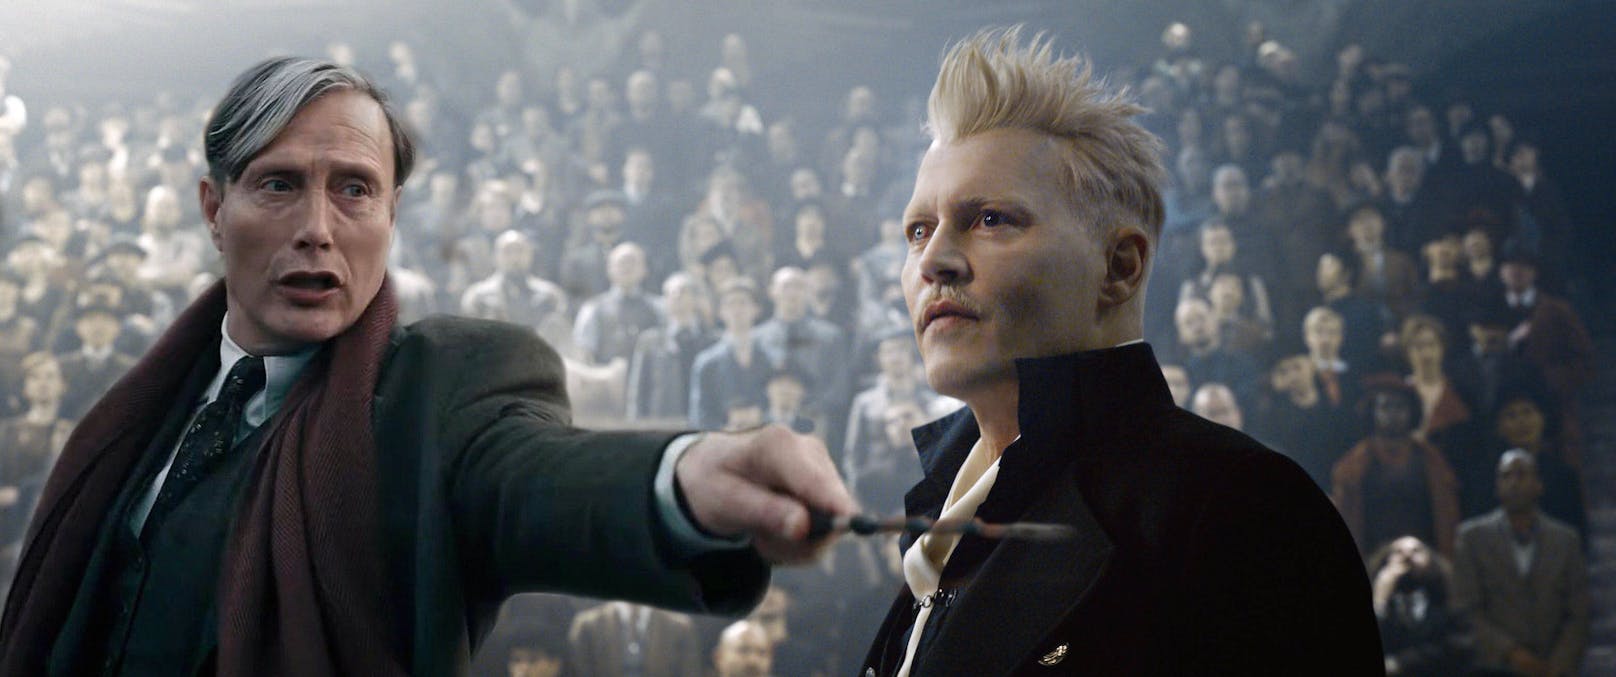 Johnny Depp als Grindelwald: Nachfolger überlässt Rolle